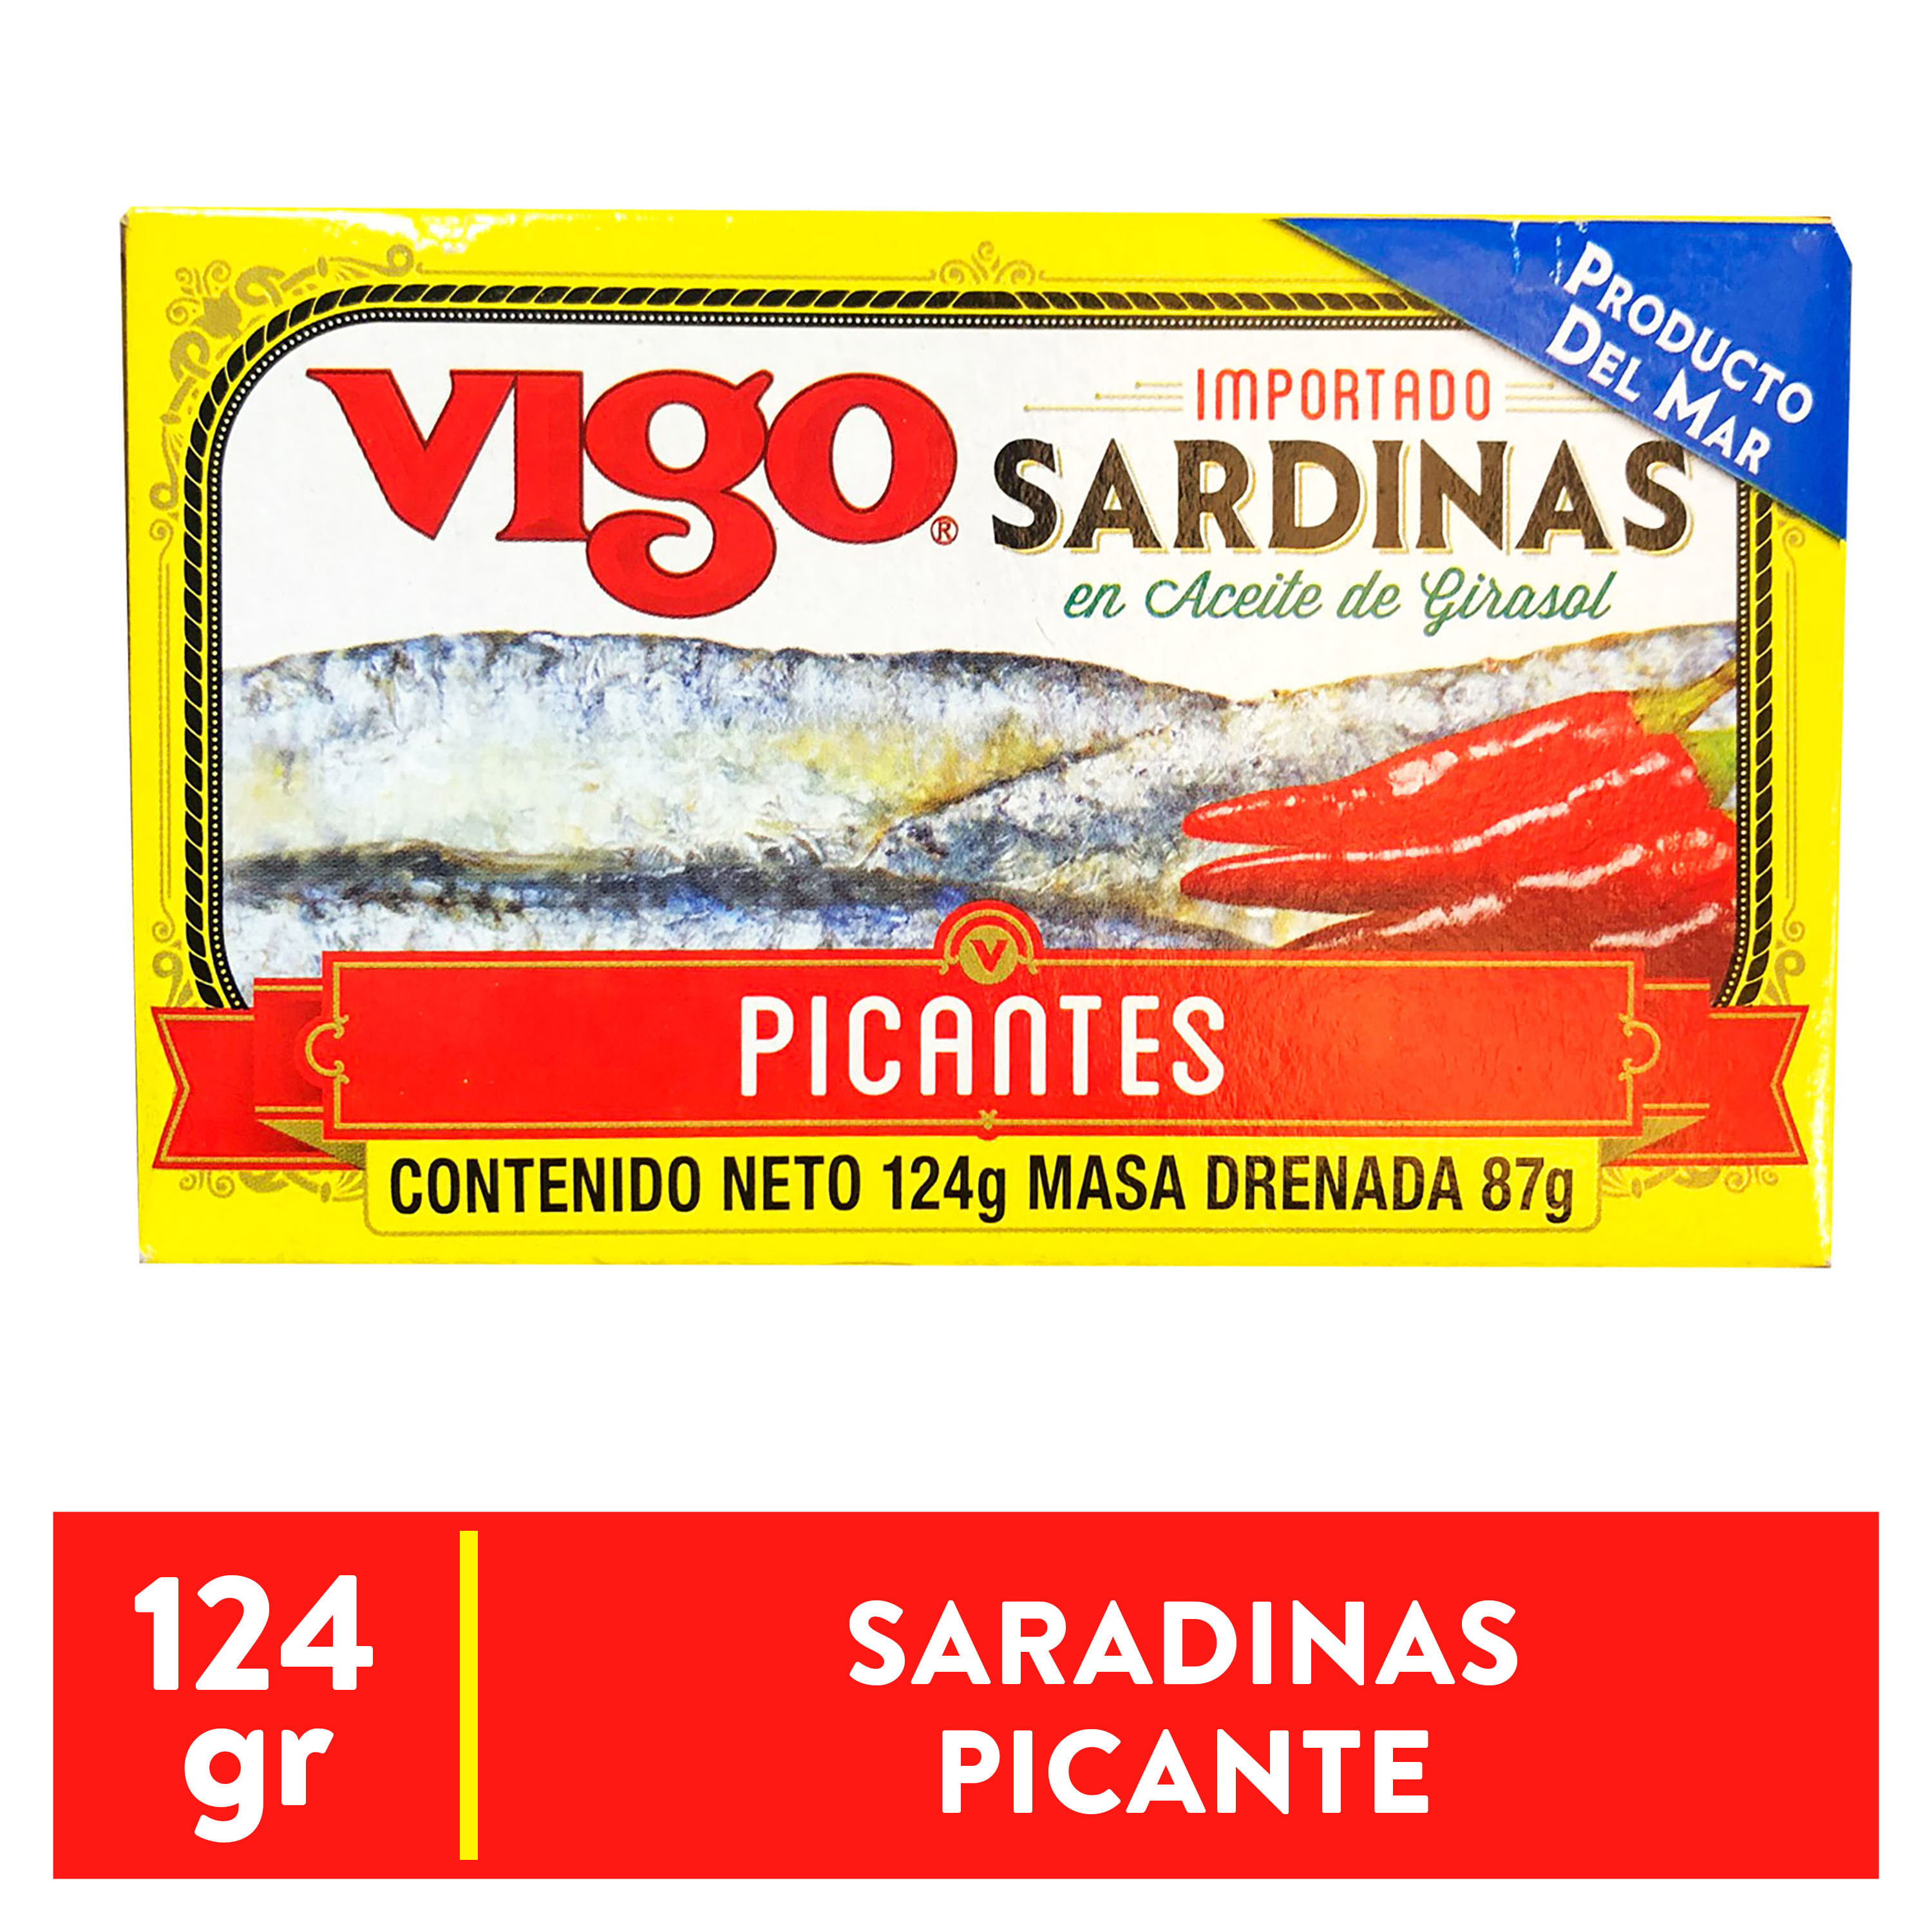 Sardinas-Pic-Aceite-Girasol-Vigo-124gr-1-97364